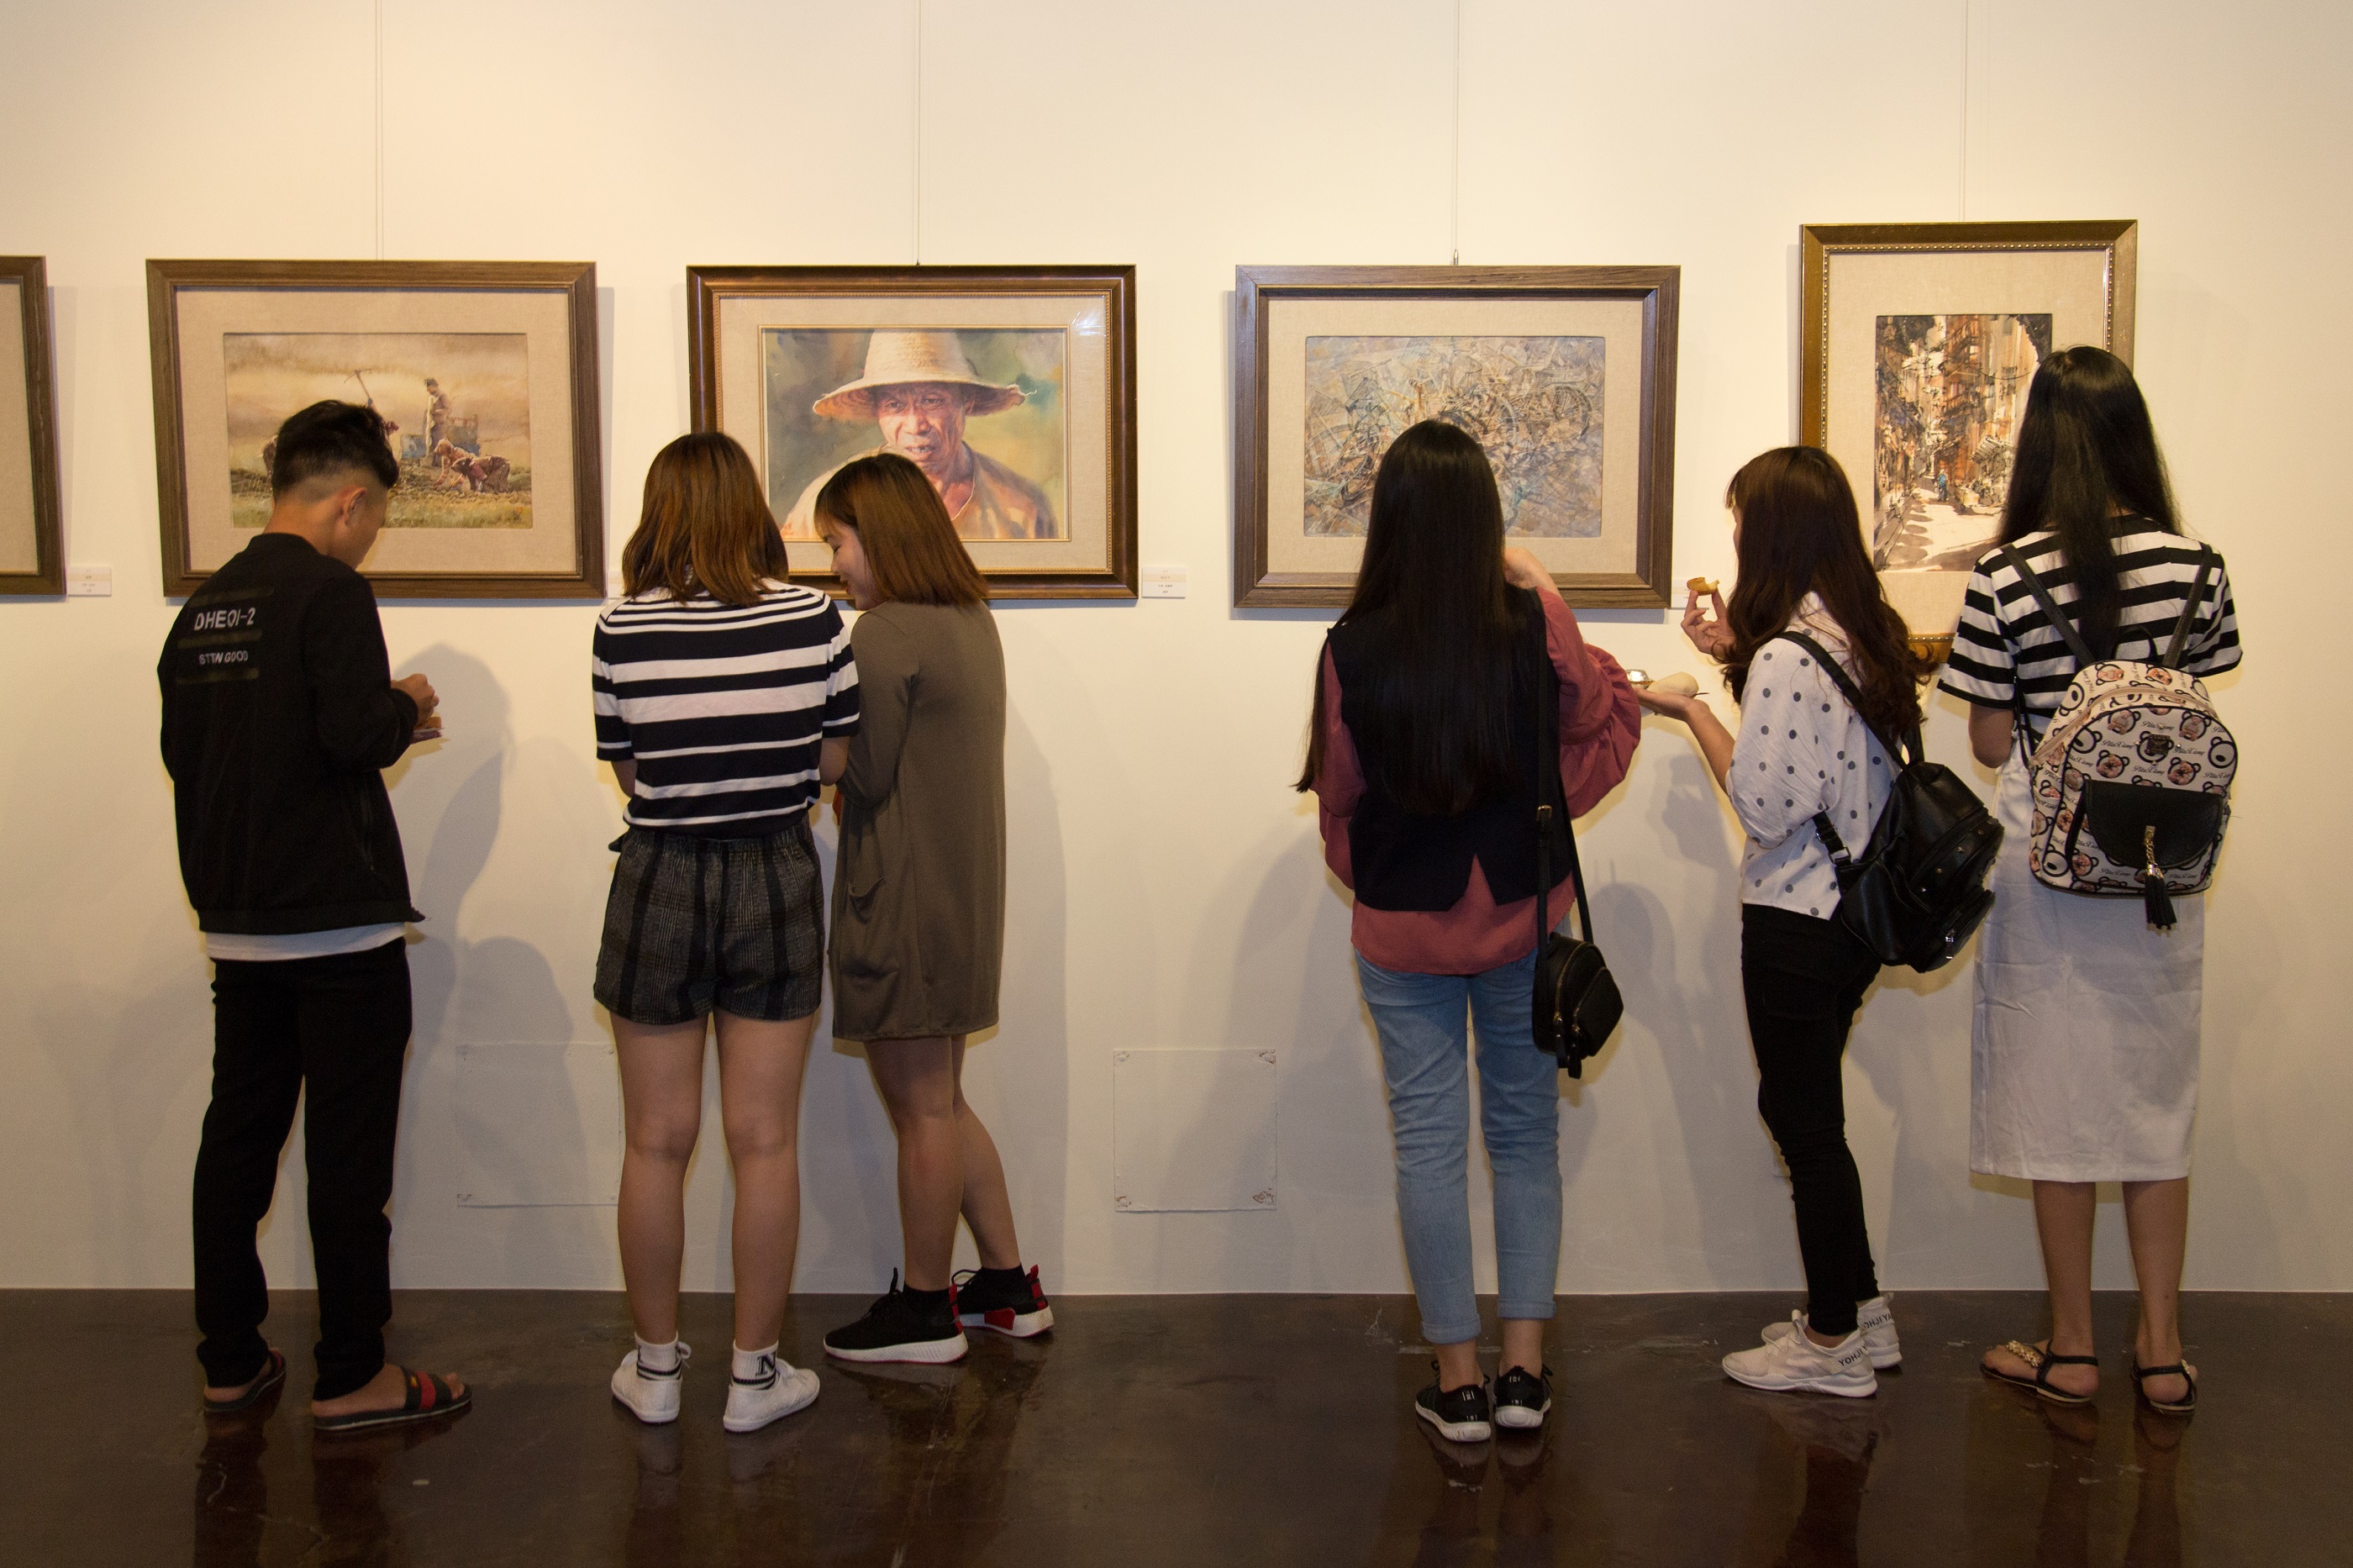 展場展出9幅陳陽春大師水彩畫及世界組23幅得獎作品，觀眾不但能一睹大師真跡，也能觀賞到世界各地水彩畫家的創作